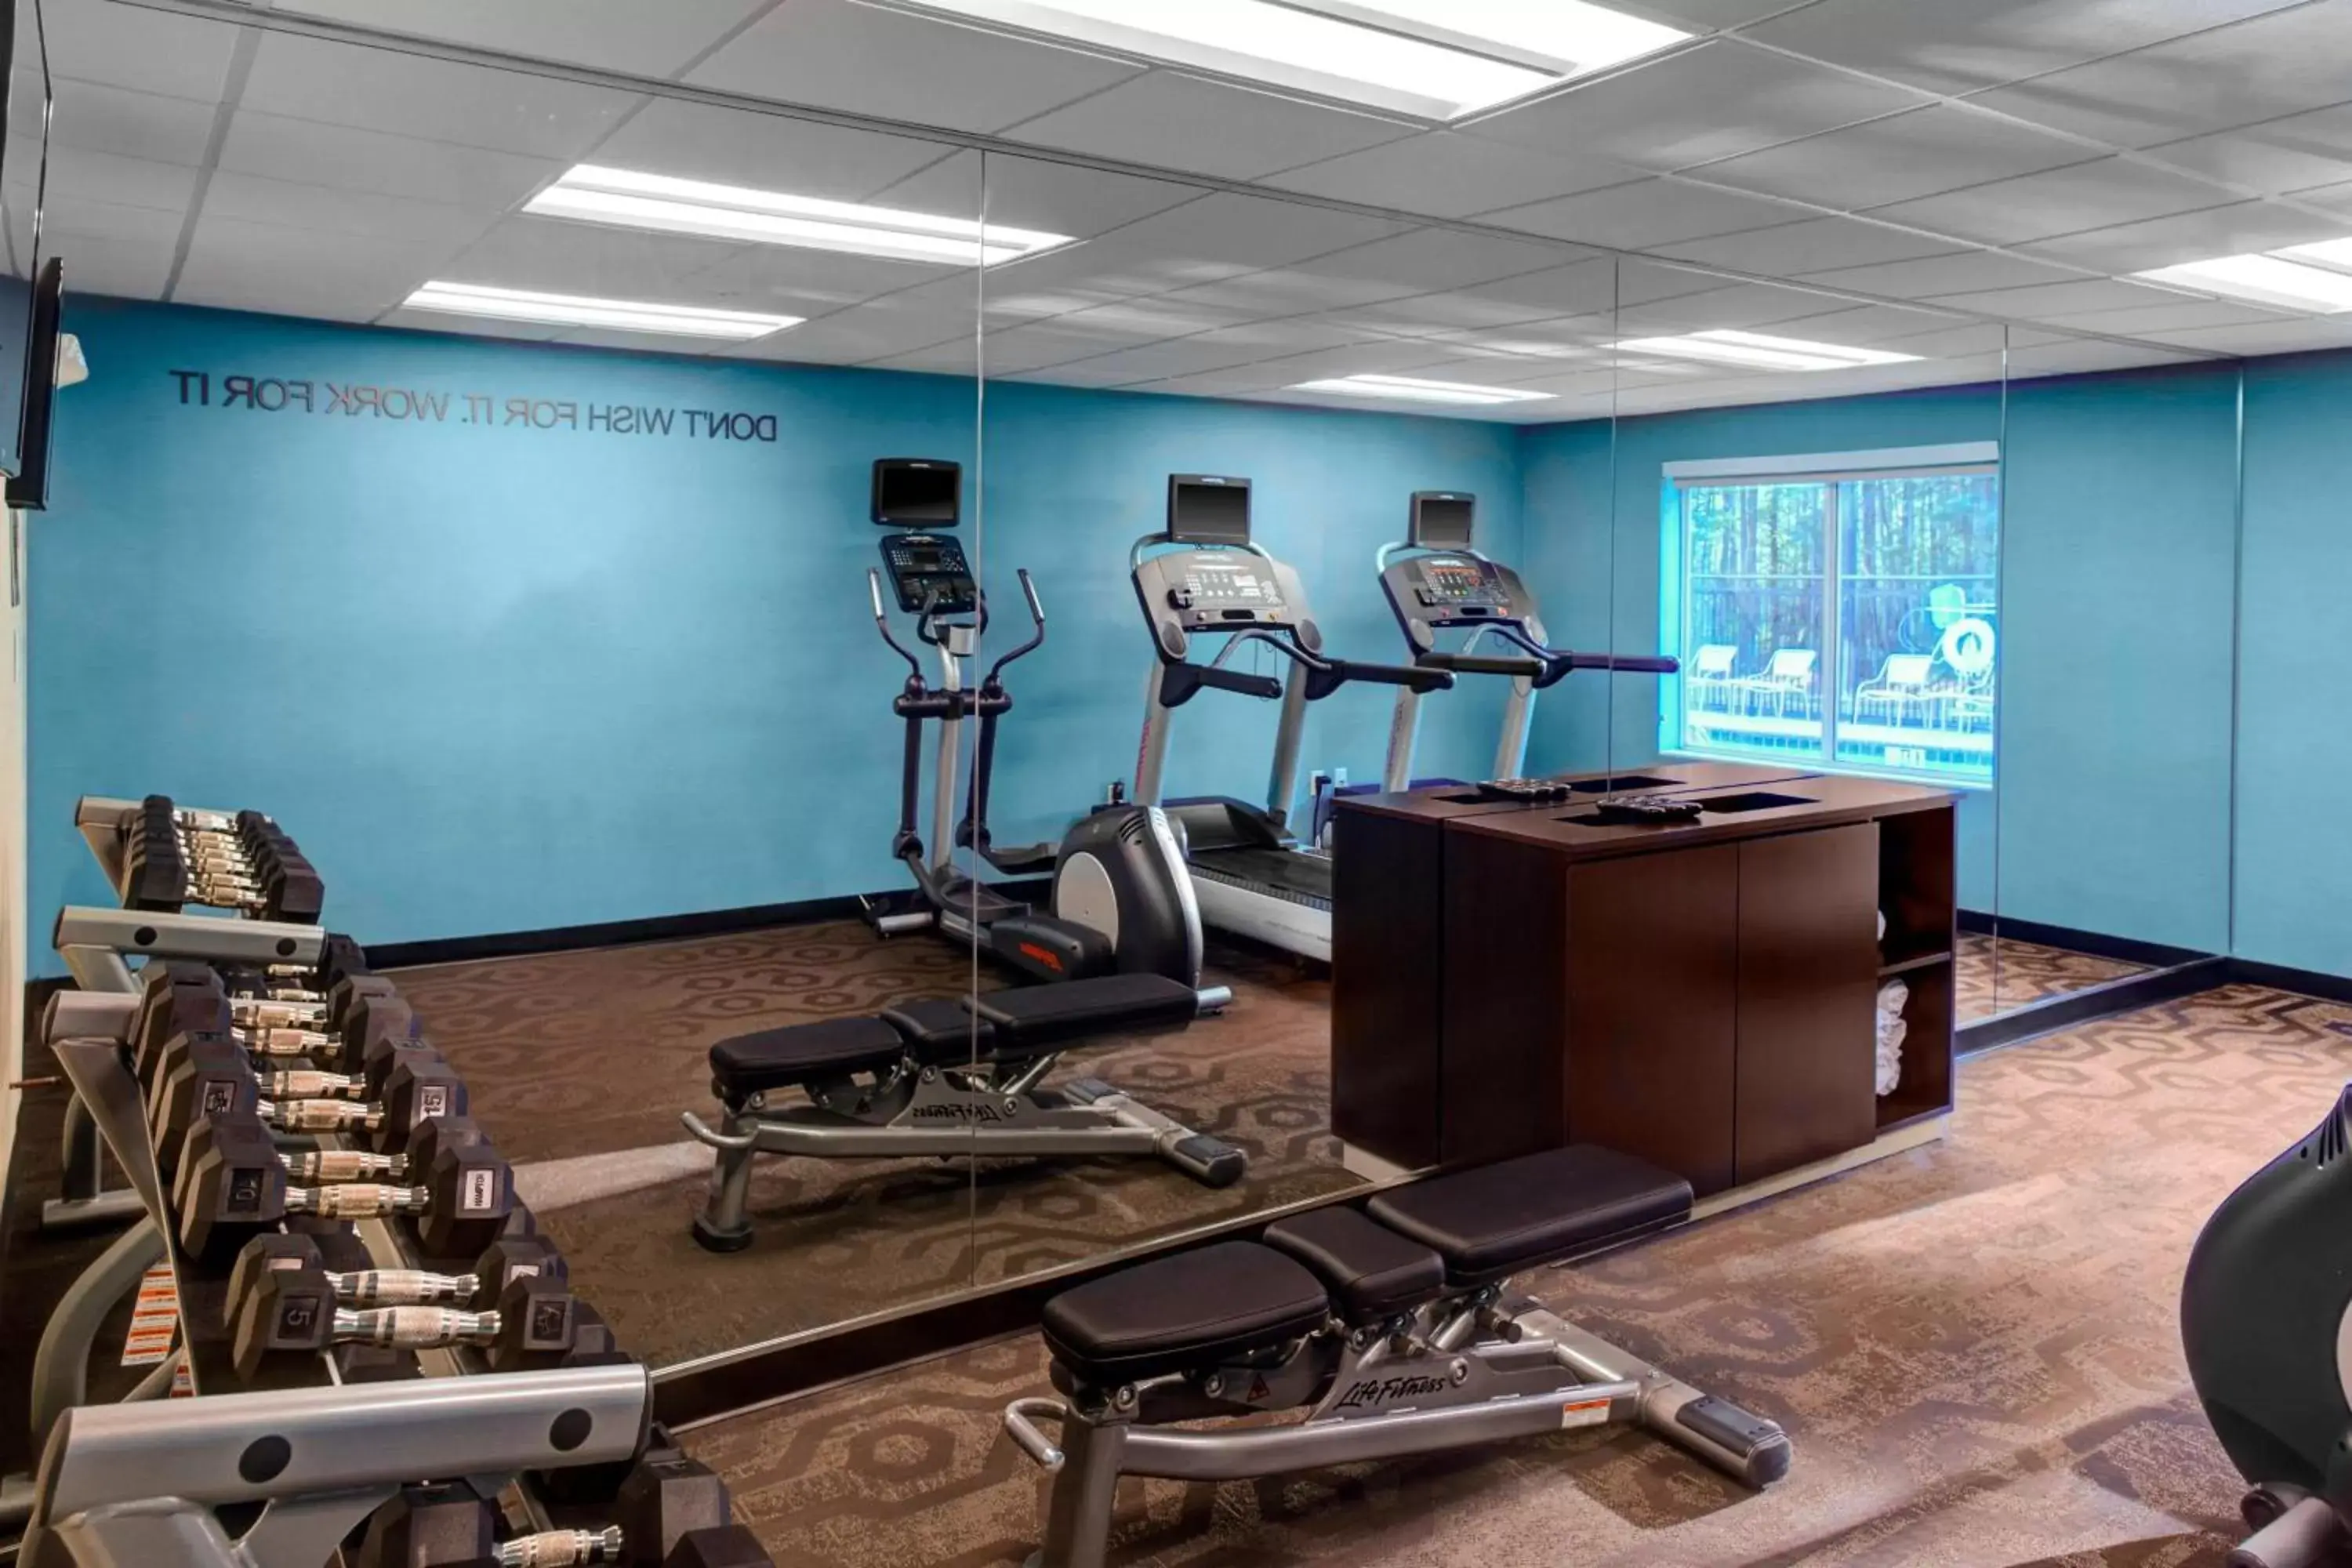 Fitness centre/facilities, Fitness Center/Facilities in Fairfield Inn & Suites by Marriott Atlanta Alpharetta